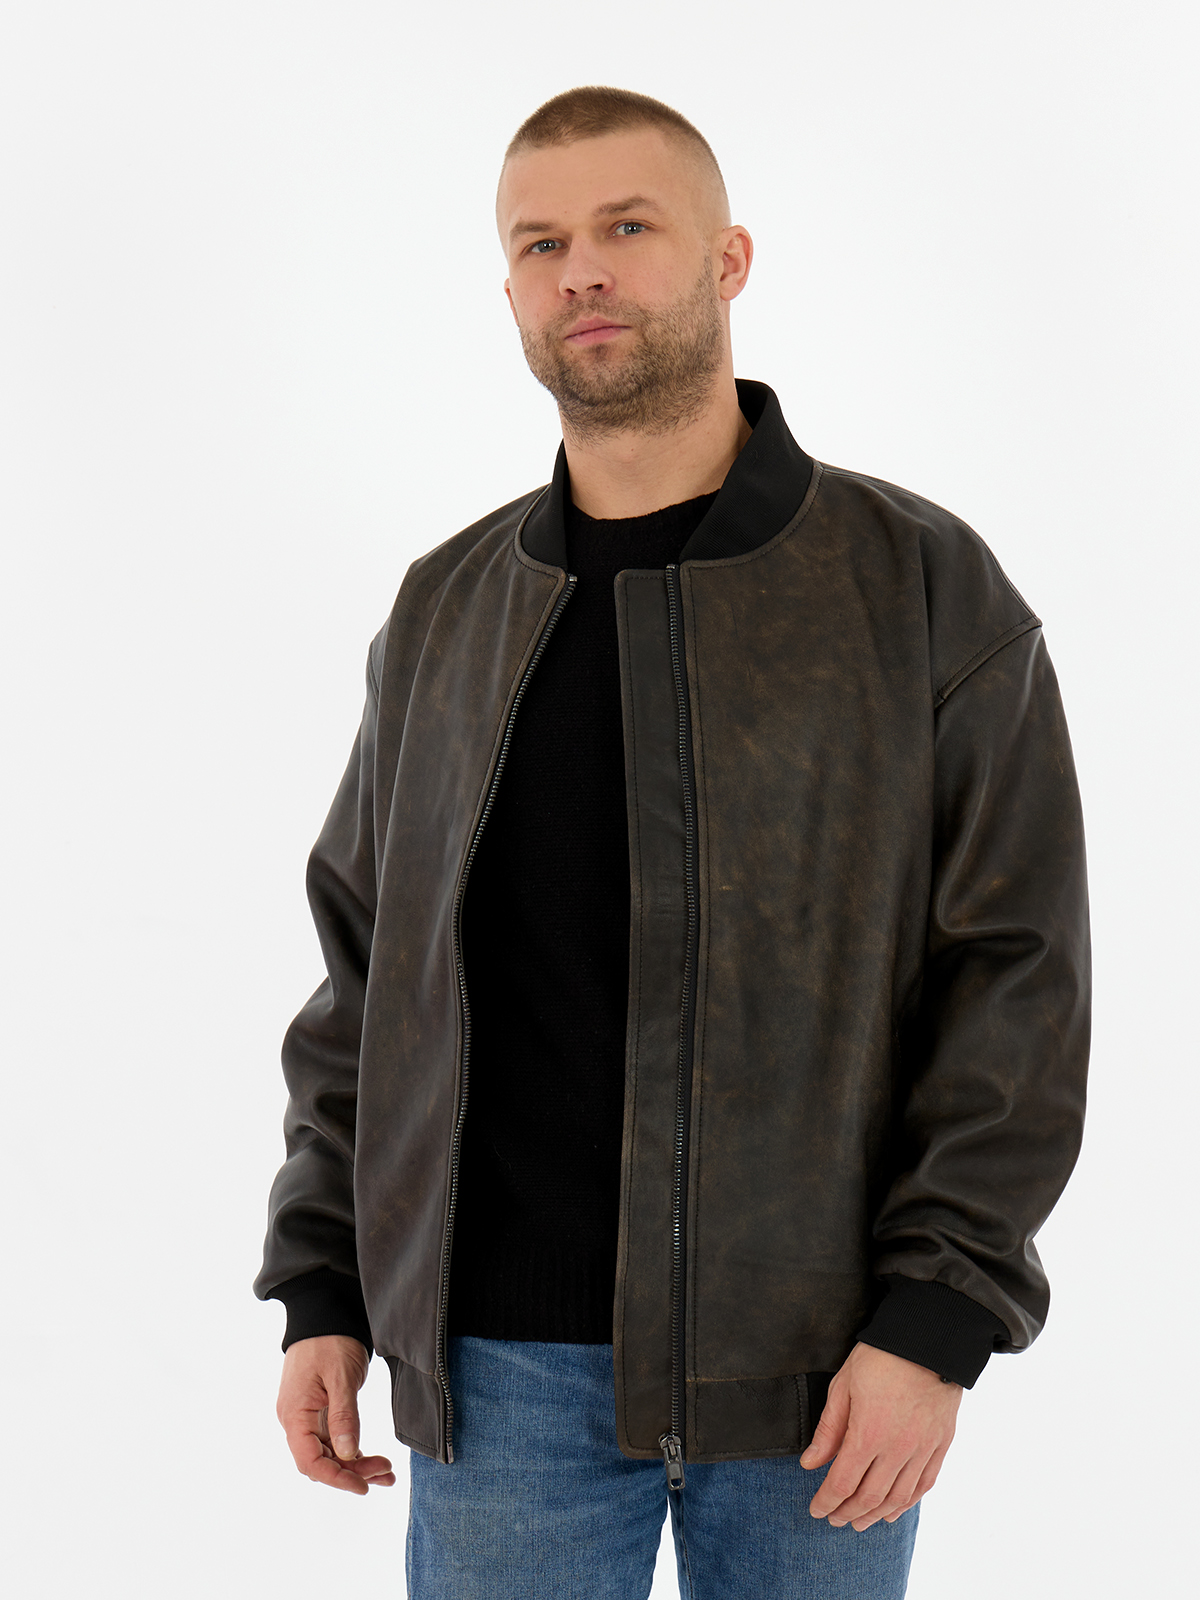 Кожаная куртка мужская Дубленкин BOMBM коричневая 54 RU